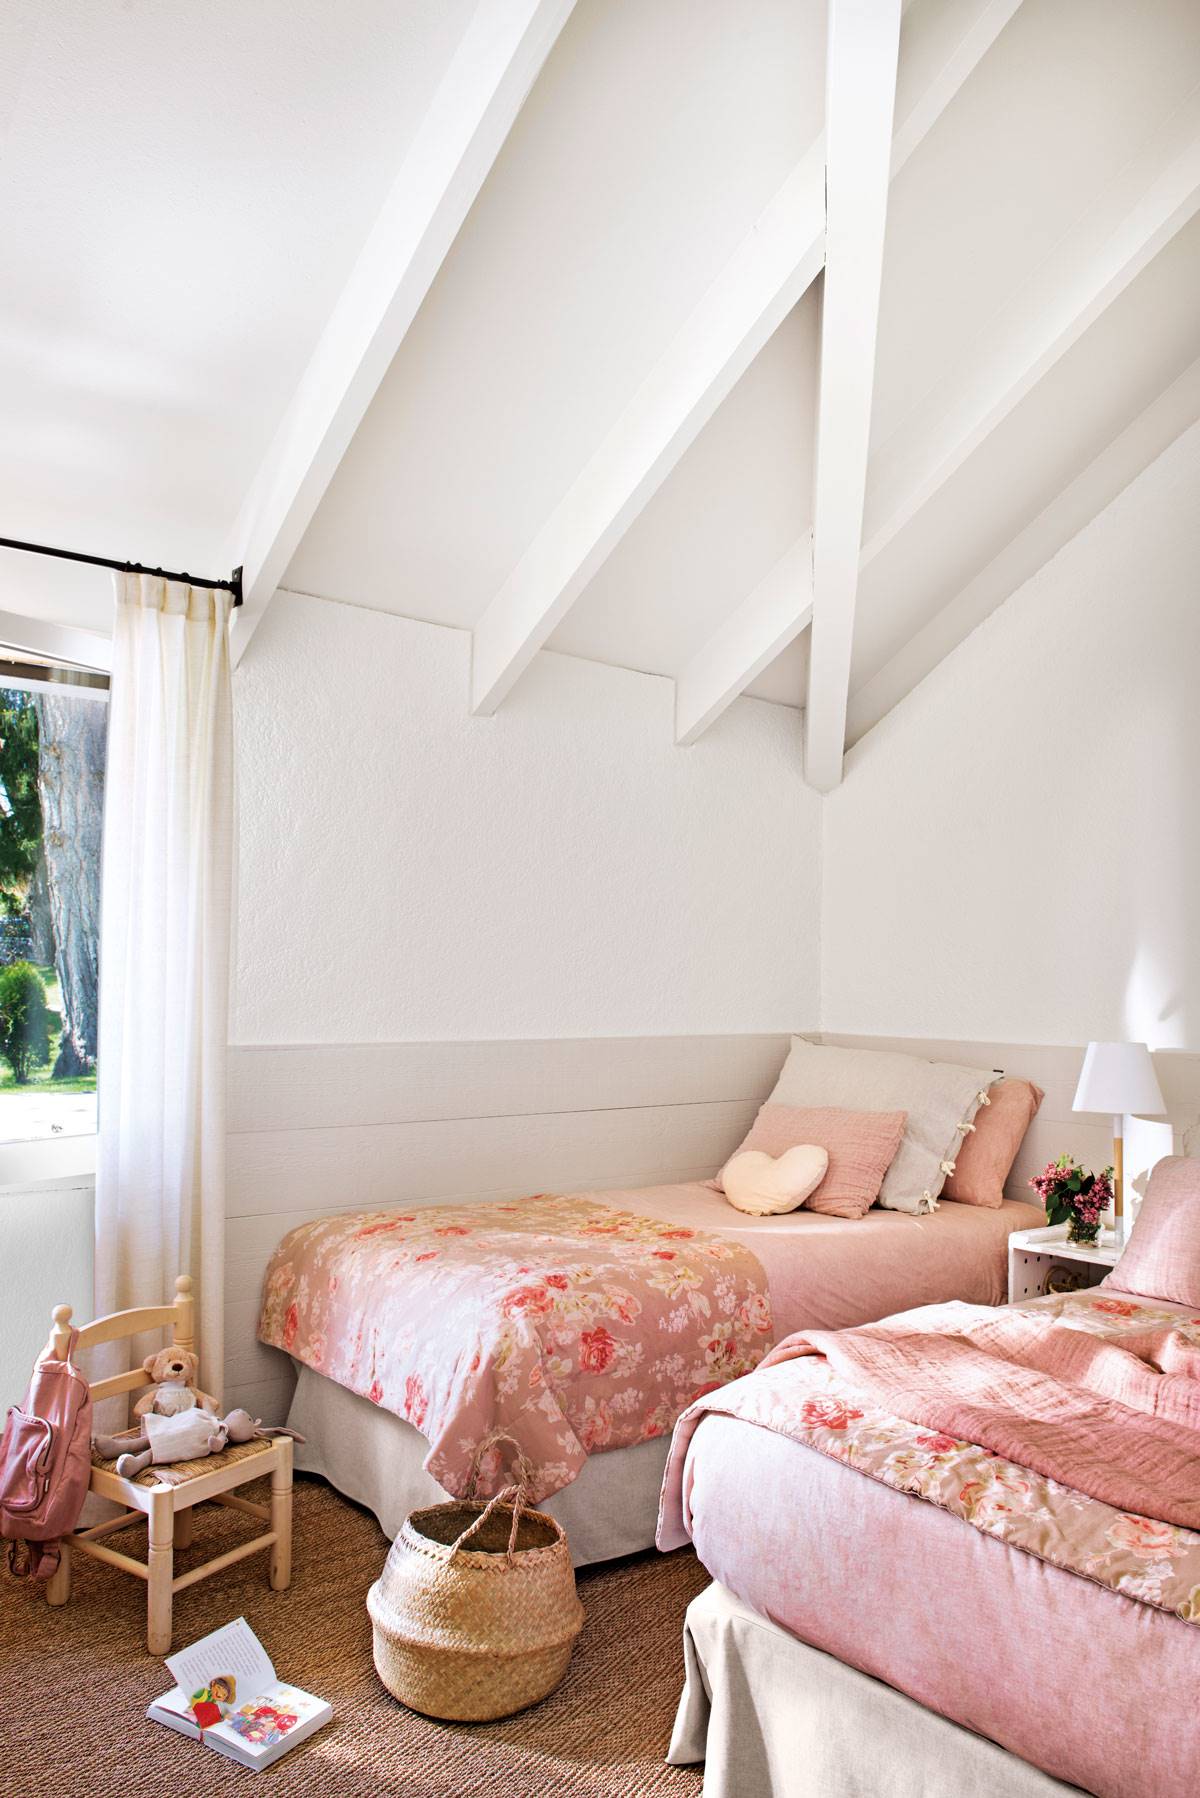 Habitación infantil con arrimadero, techo abuhardillado y ropa de cama rosa con estampado floral-507342